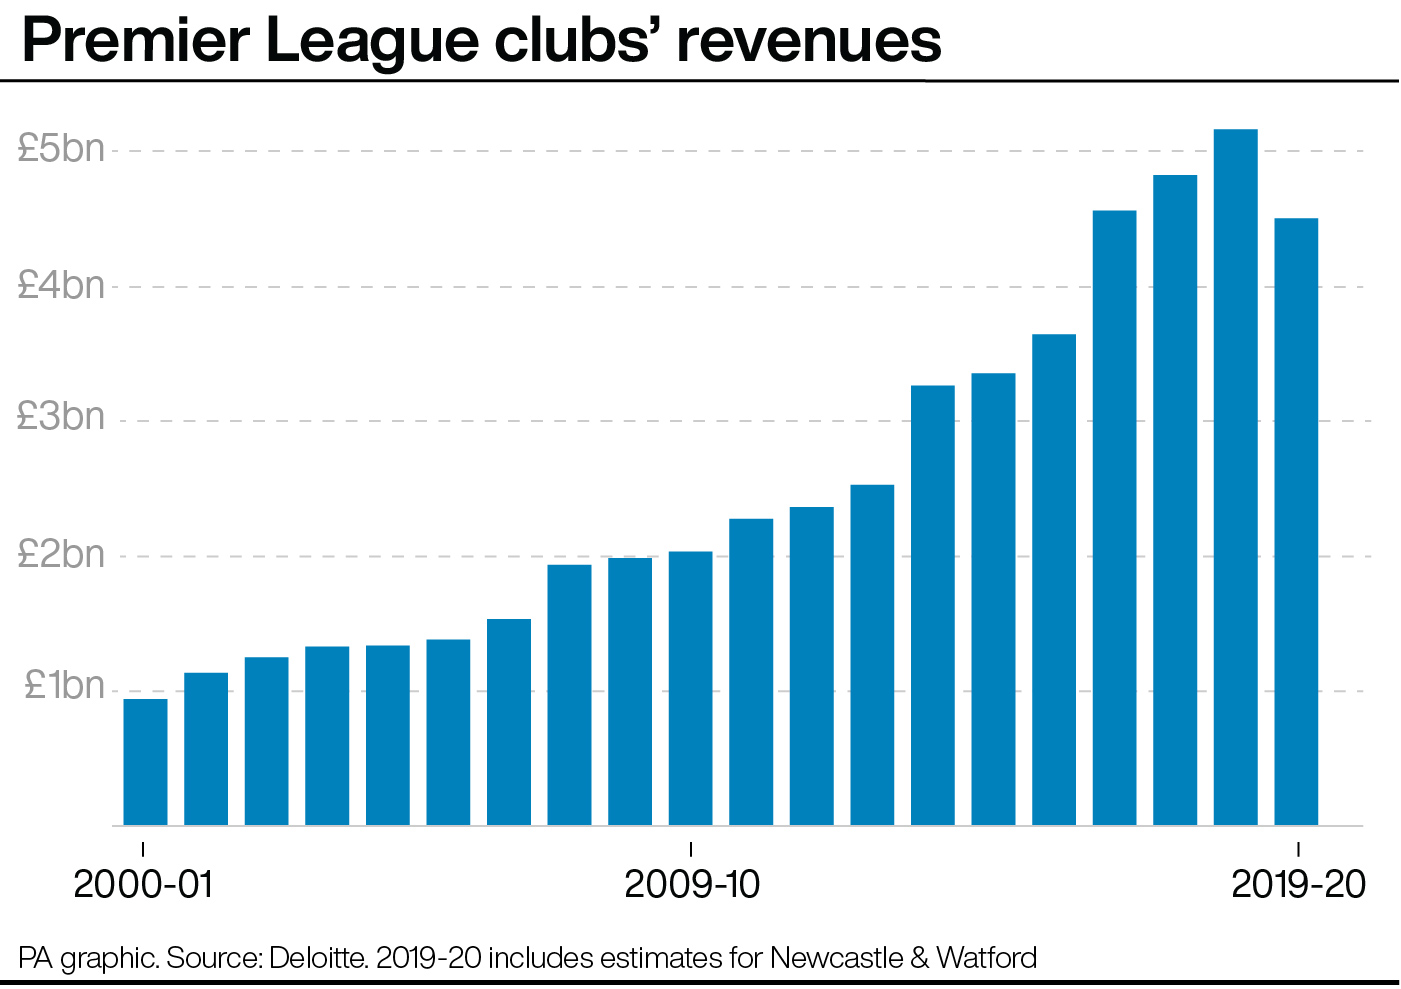 Premier League clubs' revenues since 2000-01